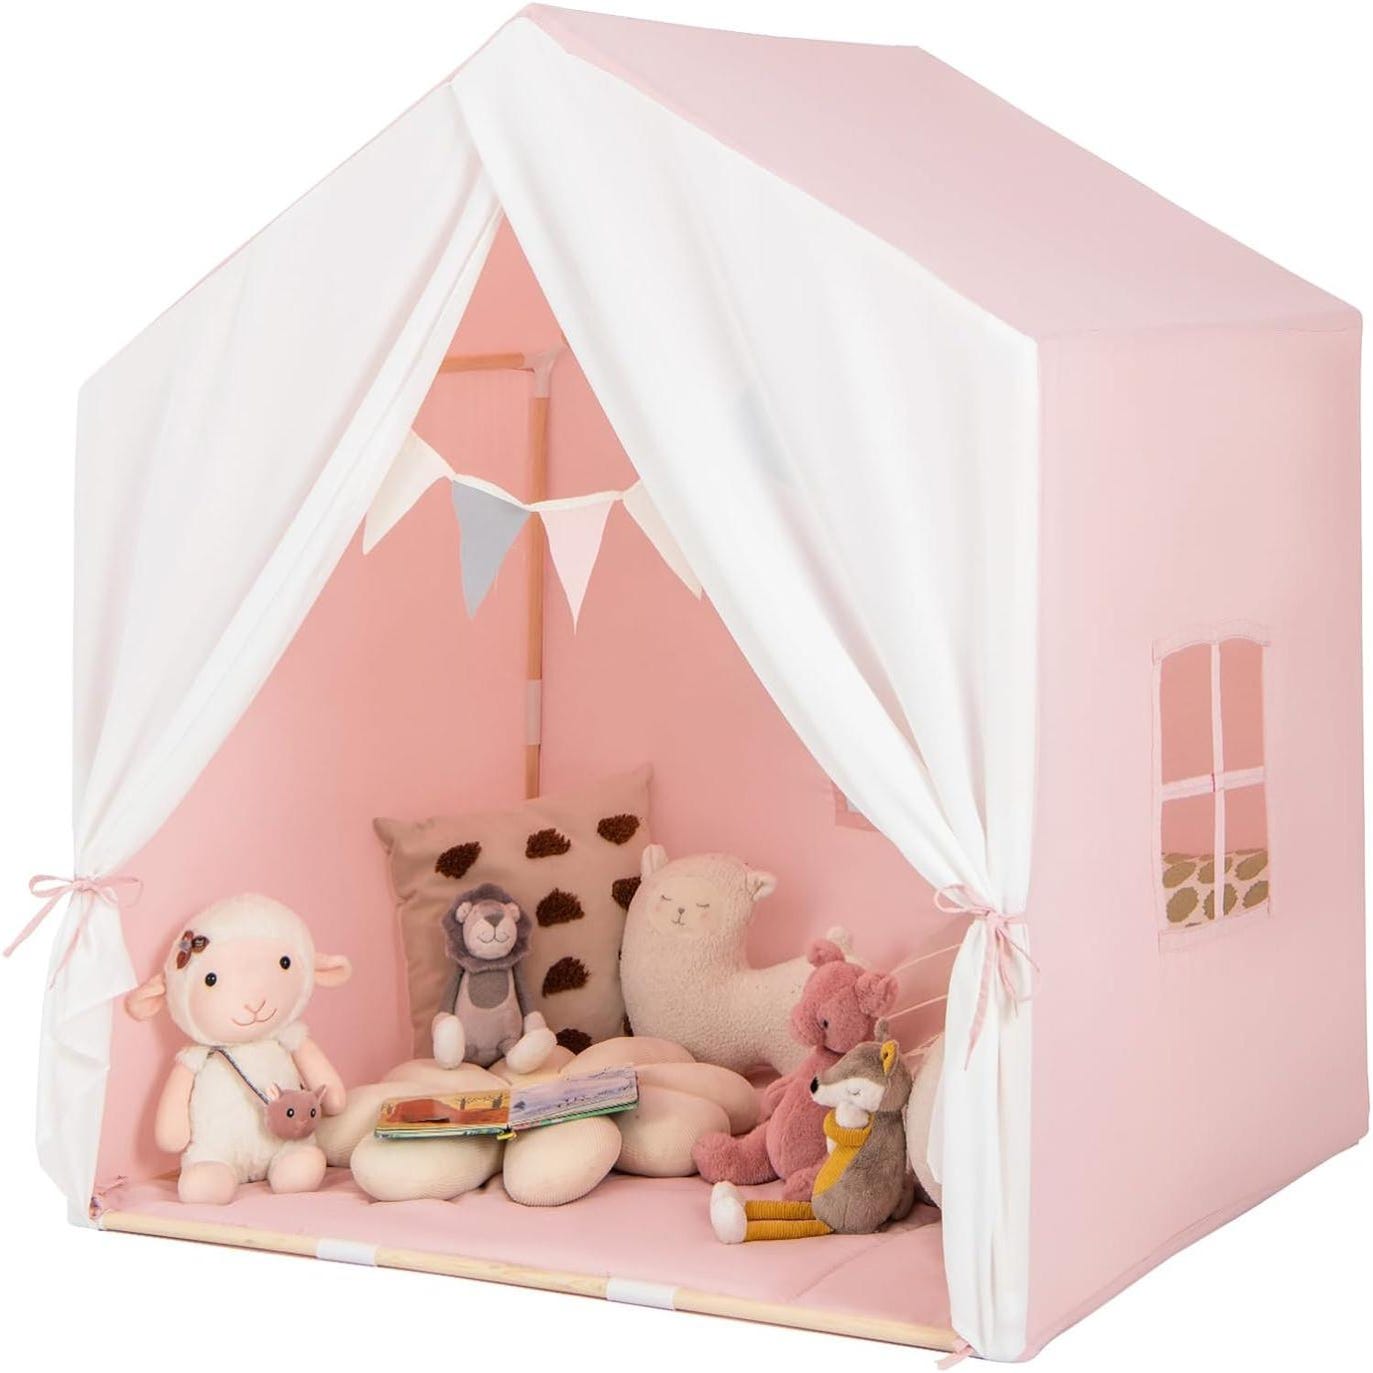 Tente de Jeu Enfants avec Tapis en Coton, Tente pour 2-3 Enfants de 3 Ans+,  131 x 91 x 131cm (Rose)